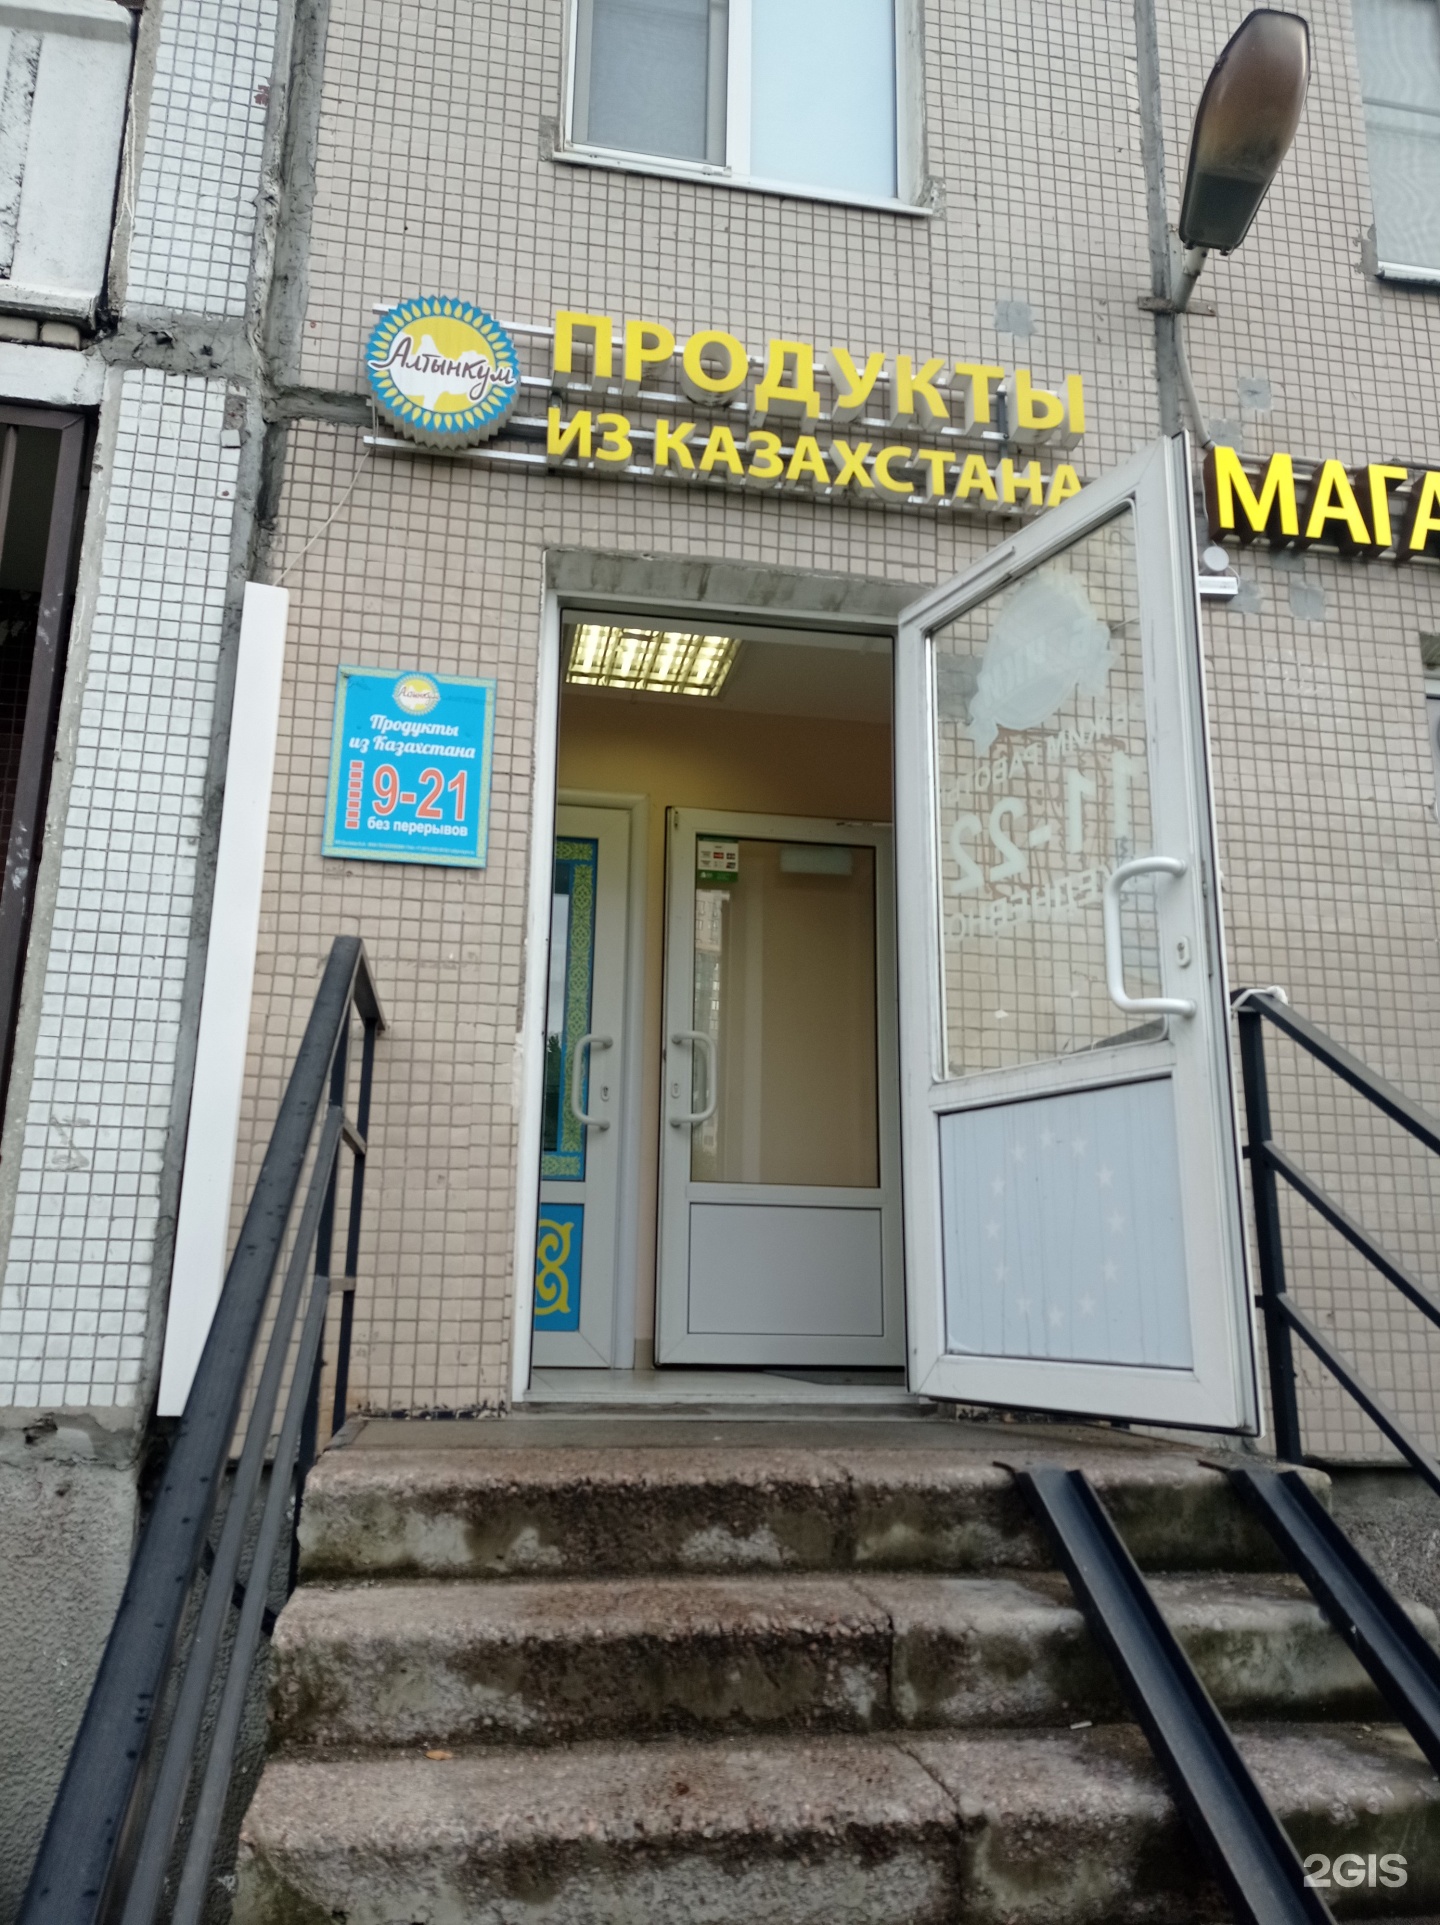 Магазин Алтынкум В Спб Адреса